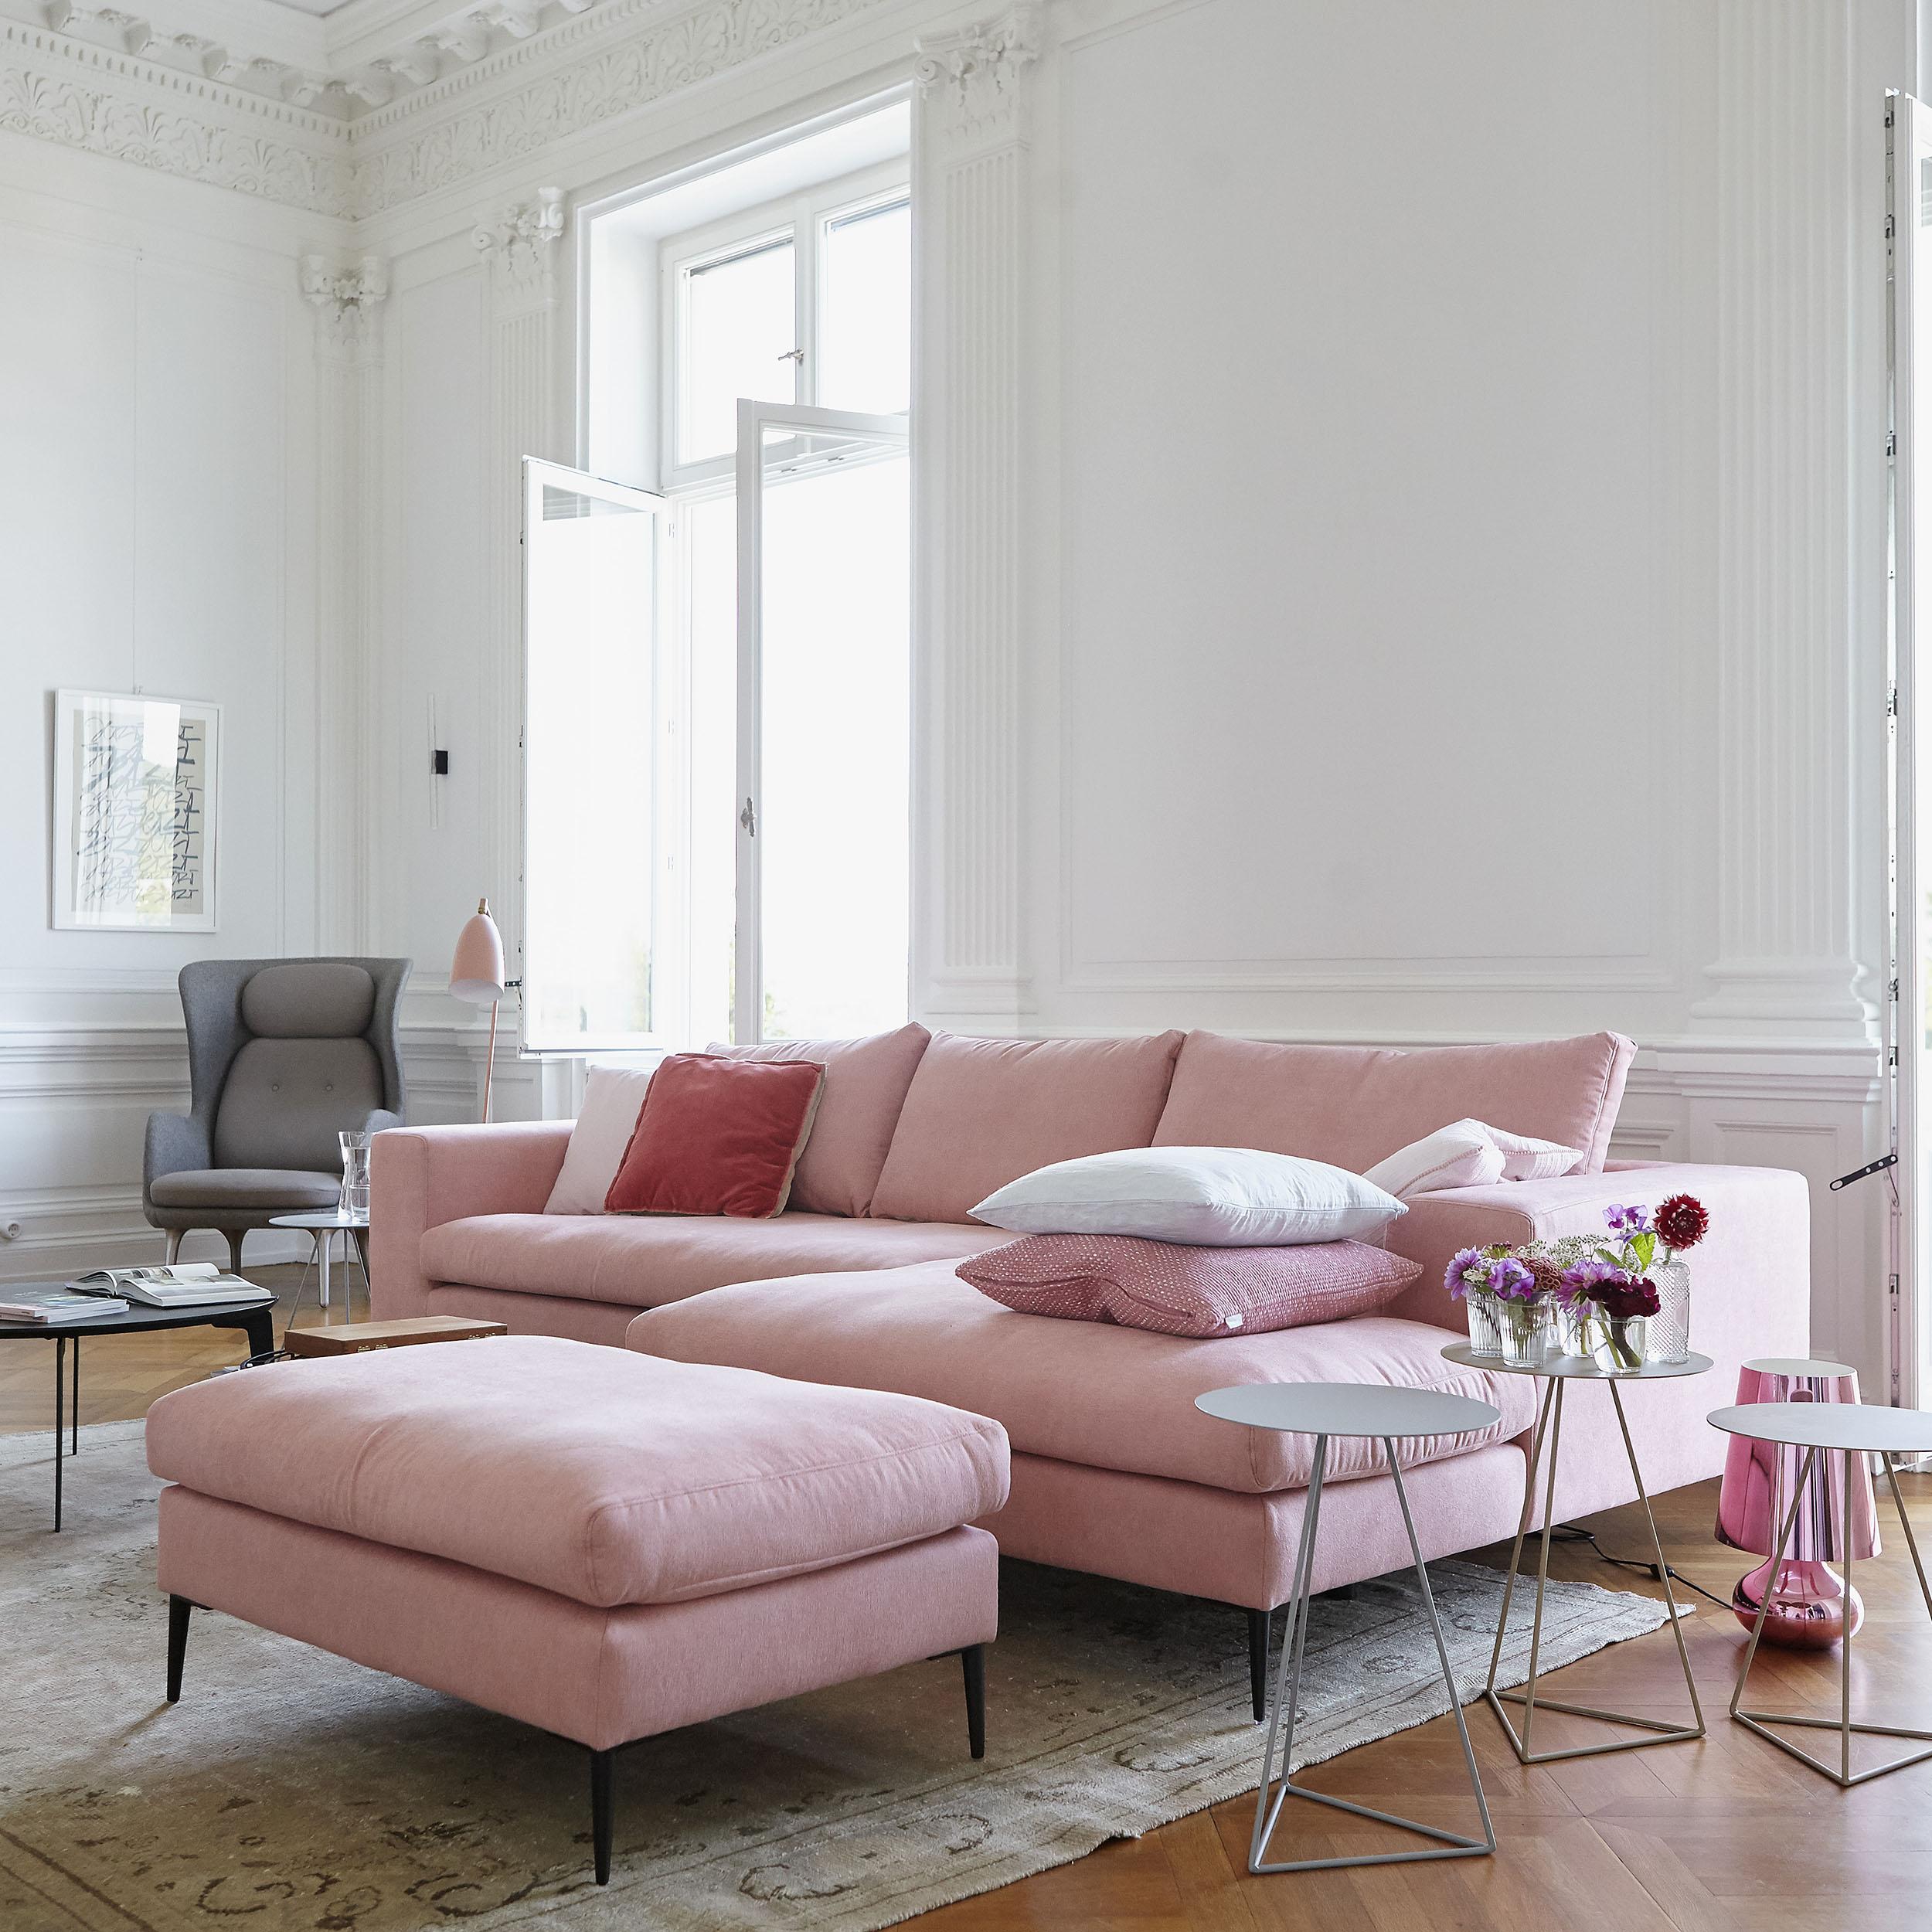 Wohntraum in rosa - gemütliche Sofaecke von ikarus #bigsofa ©ikarus